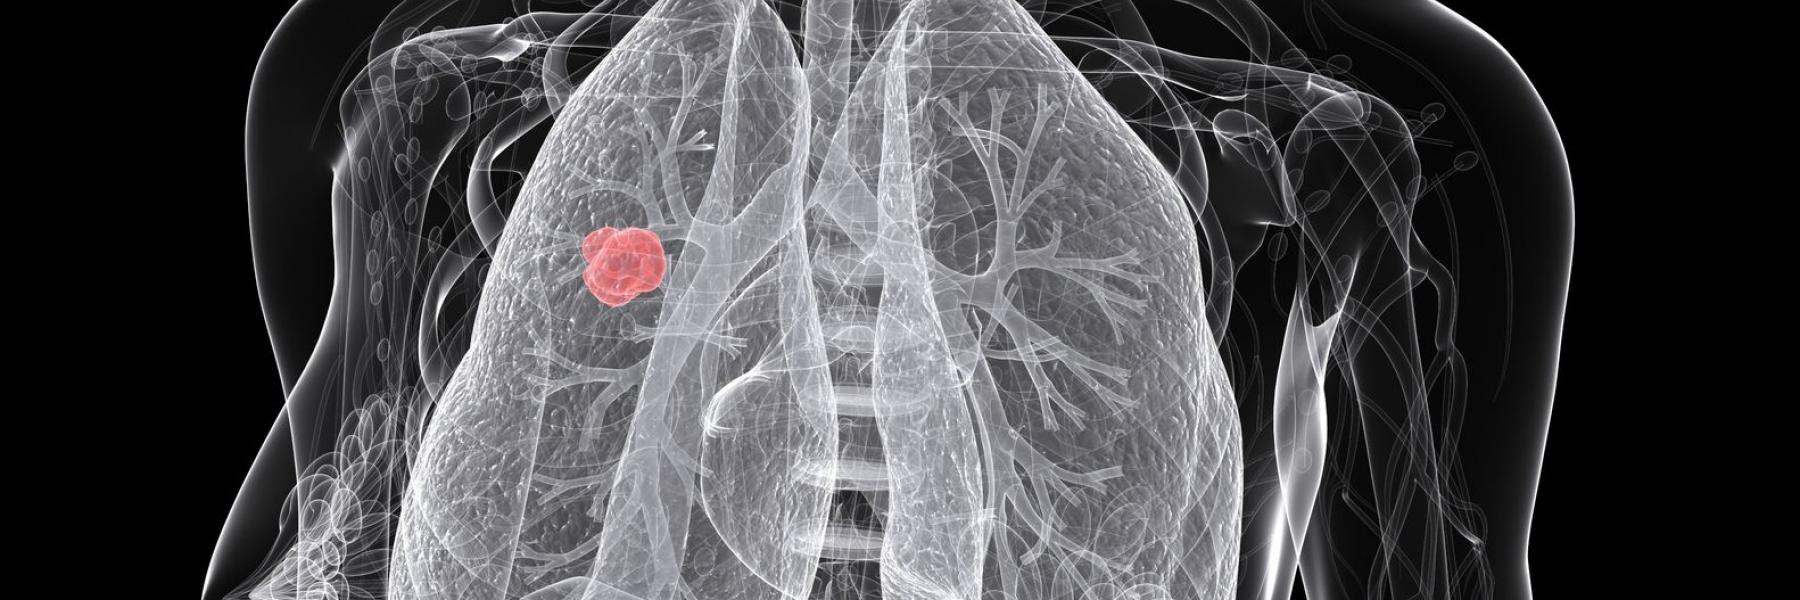 خرافات ومعلومات زائفة عن سرطان الرئة